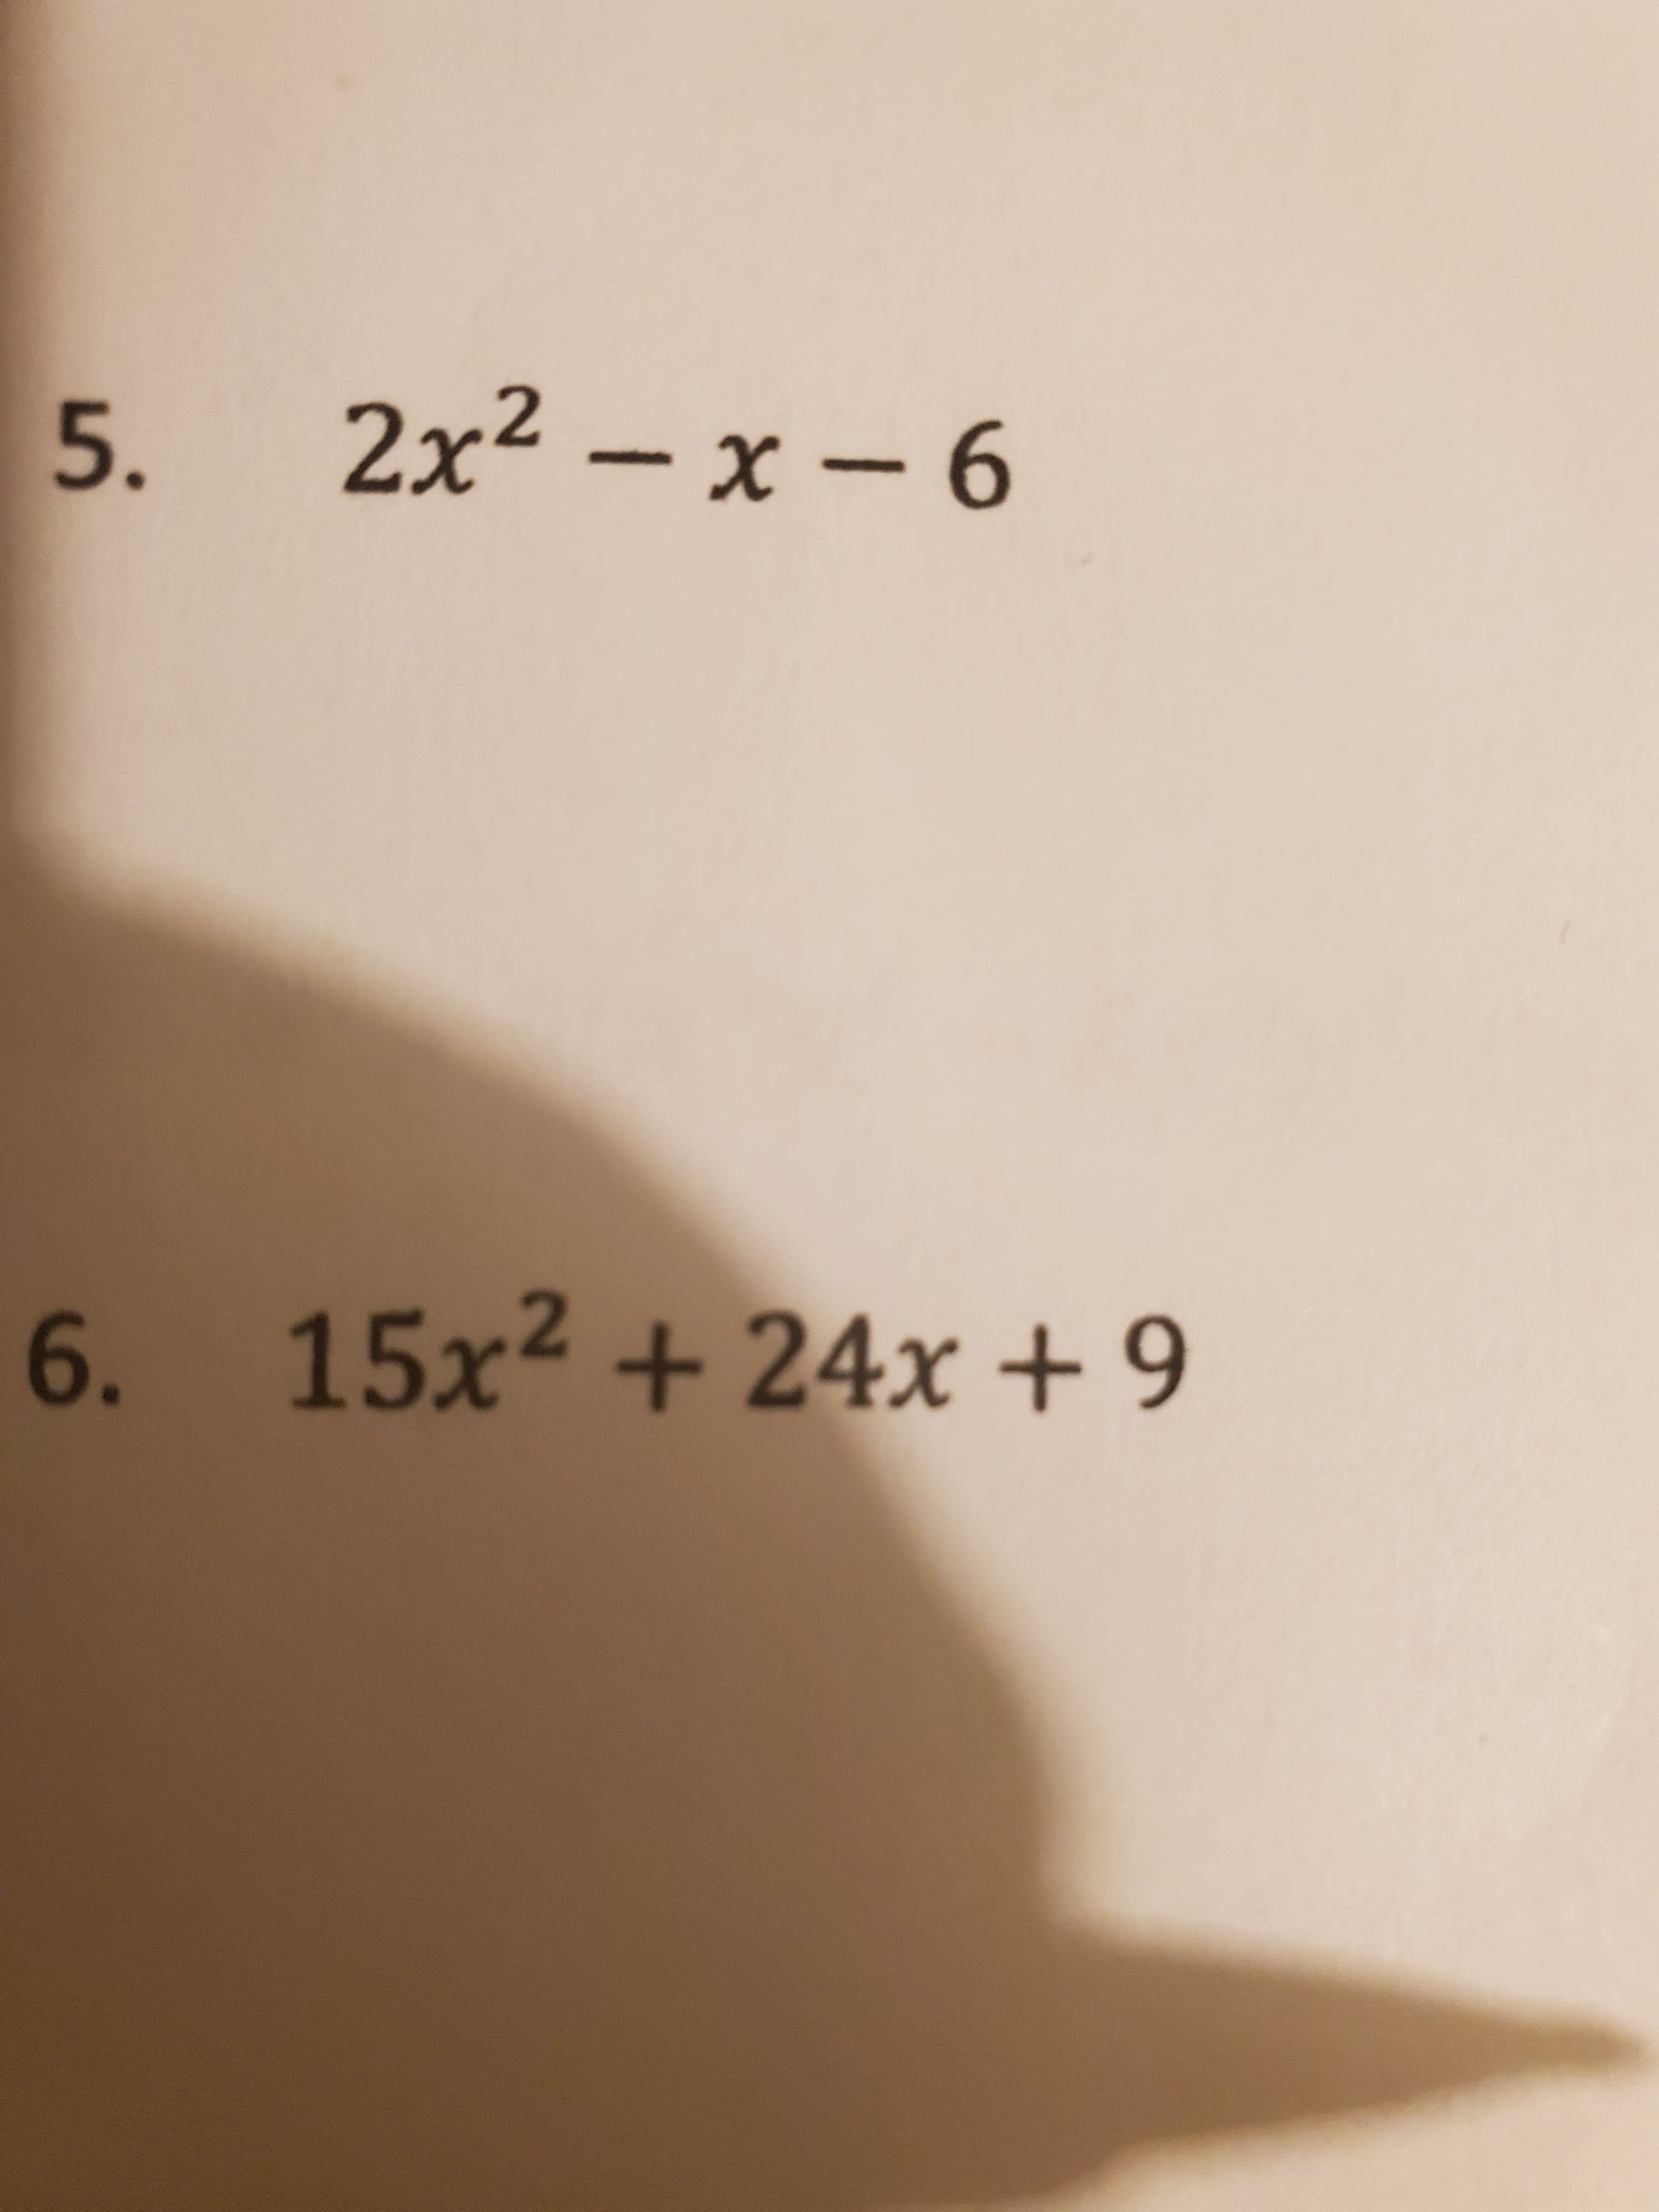 2x² – x – 6
5.
6. 15x2 + 24x + 9
